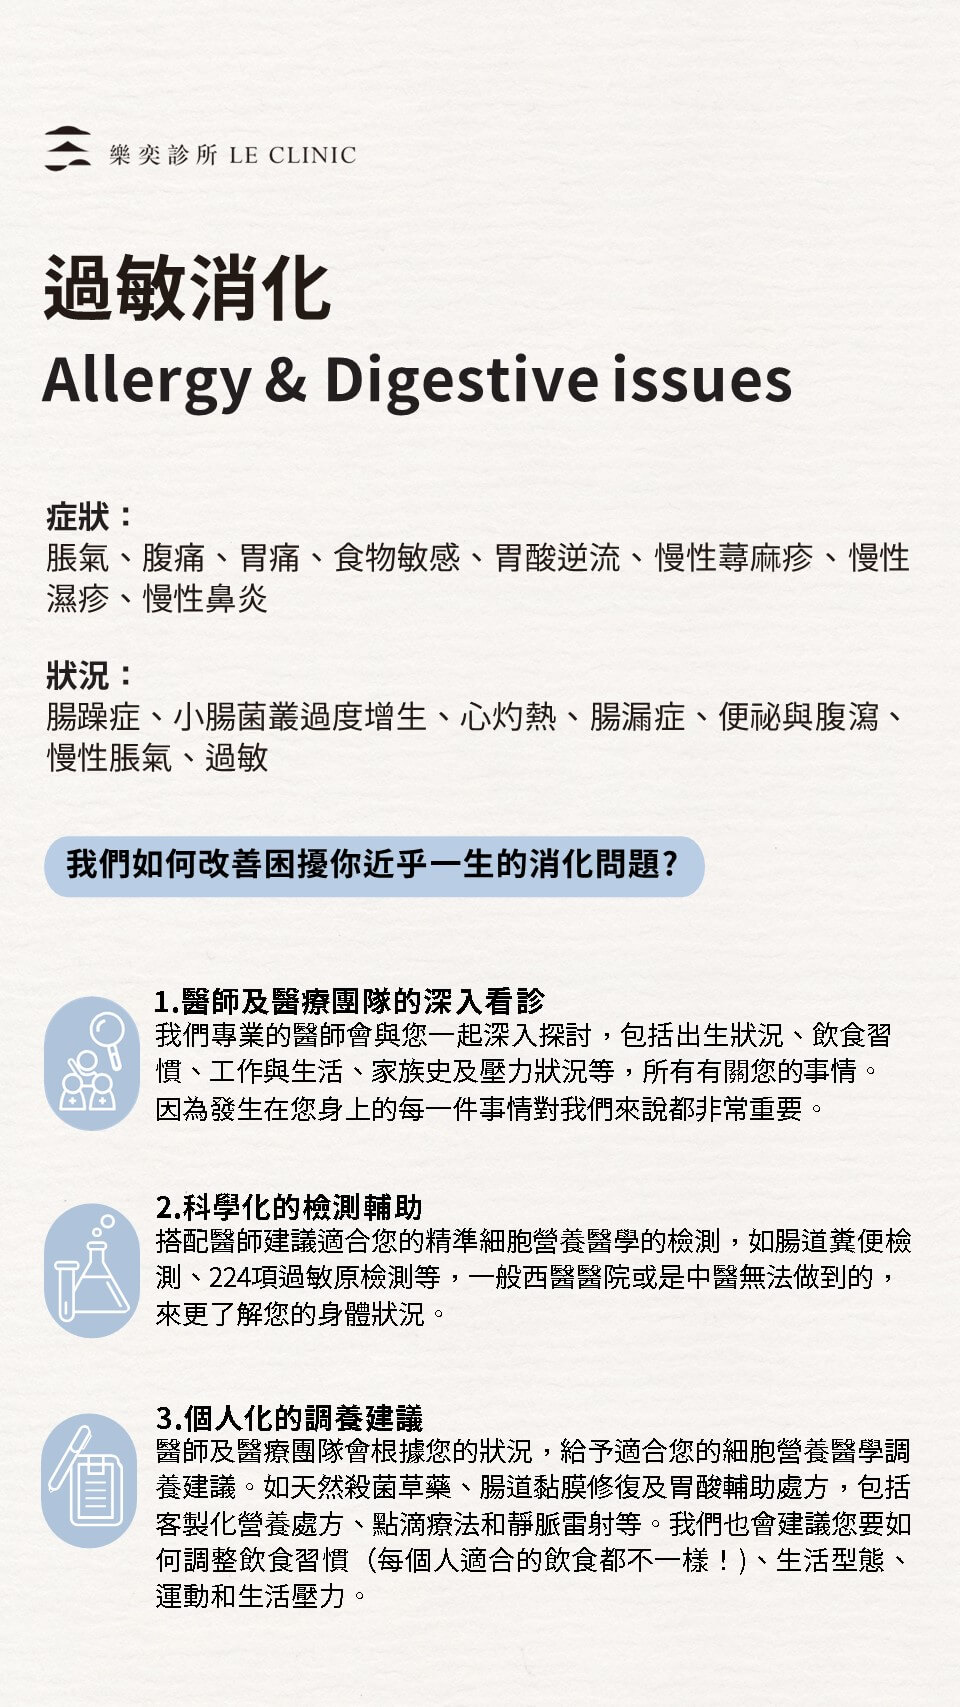 過敏消化 Allergy & Digestive issues - 簡介